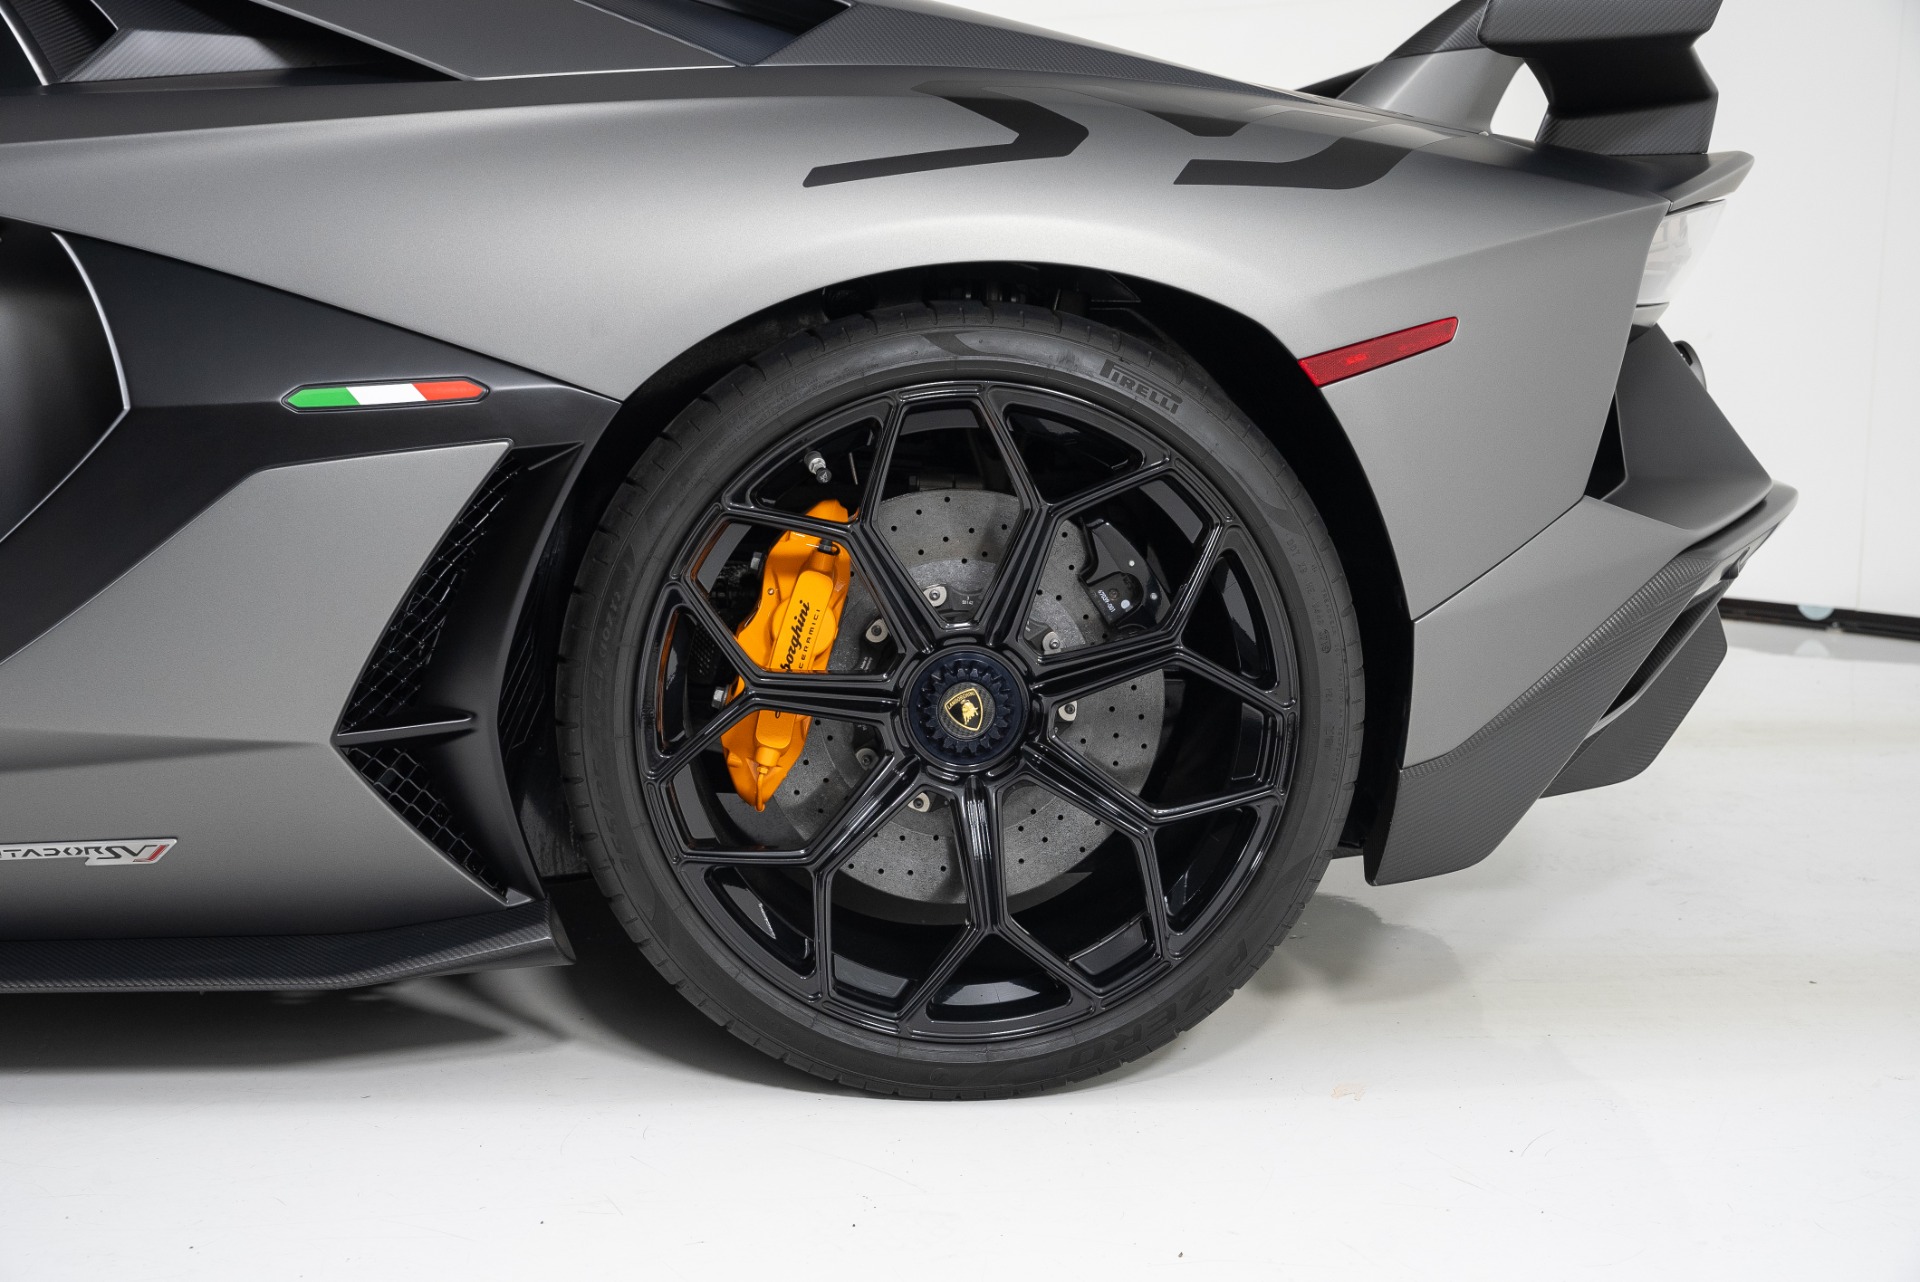 Used 2020 Lamborghini Aventador SVJ For Sale (Sold) | West Coast 